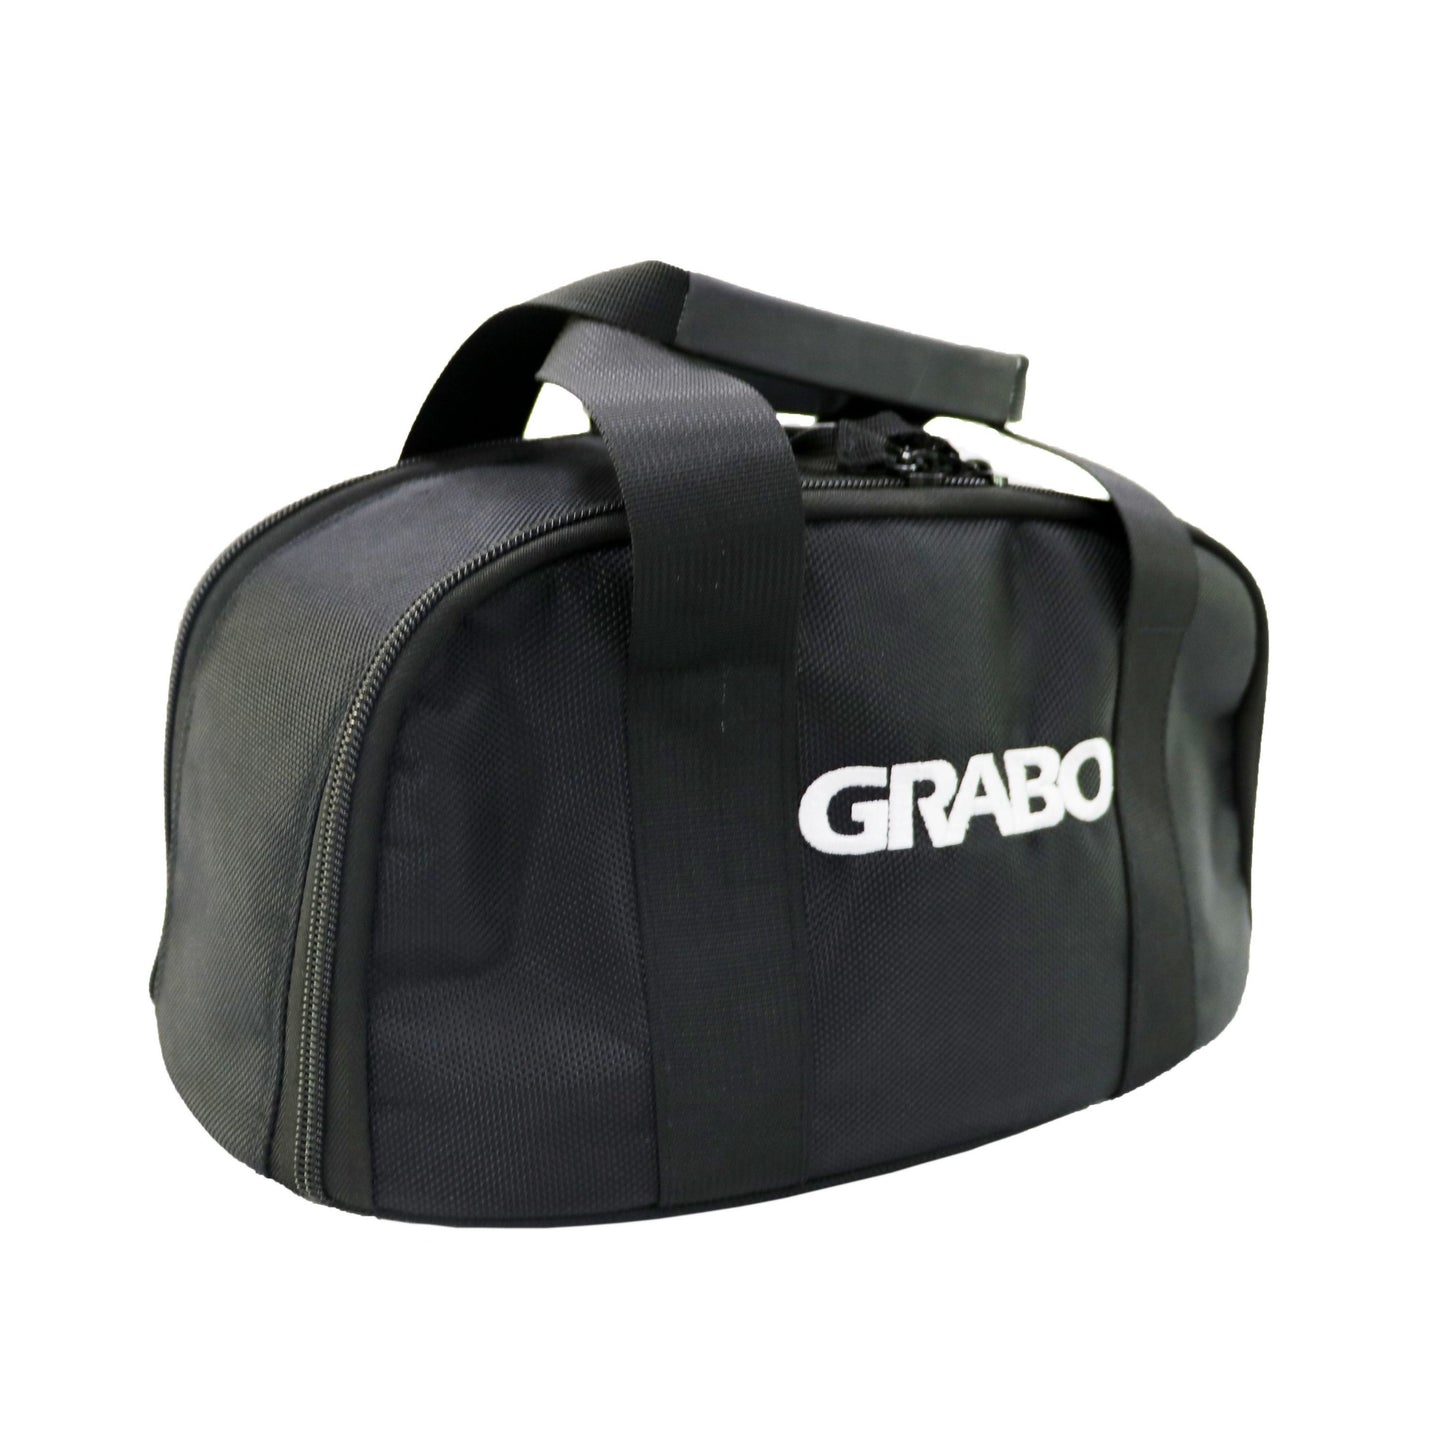 GP-1LI-FB-1S - GRABO PRO Lifter 20 - Portable Vacuum Lifter - 375 lbs